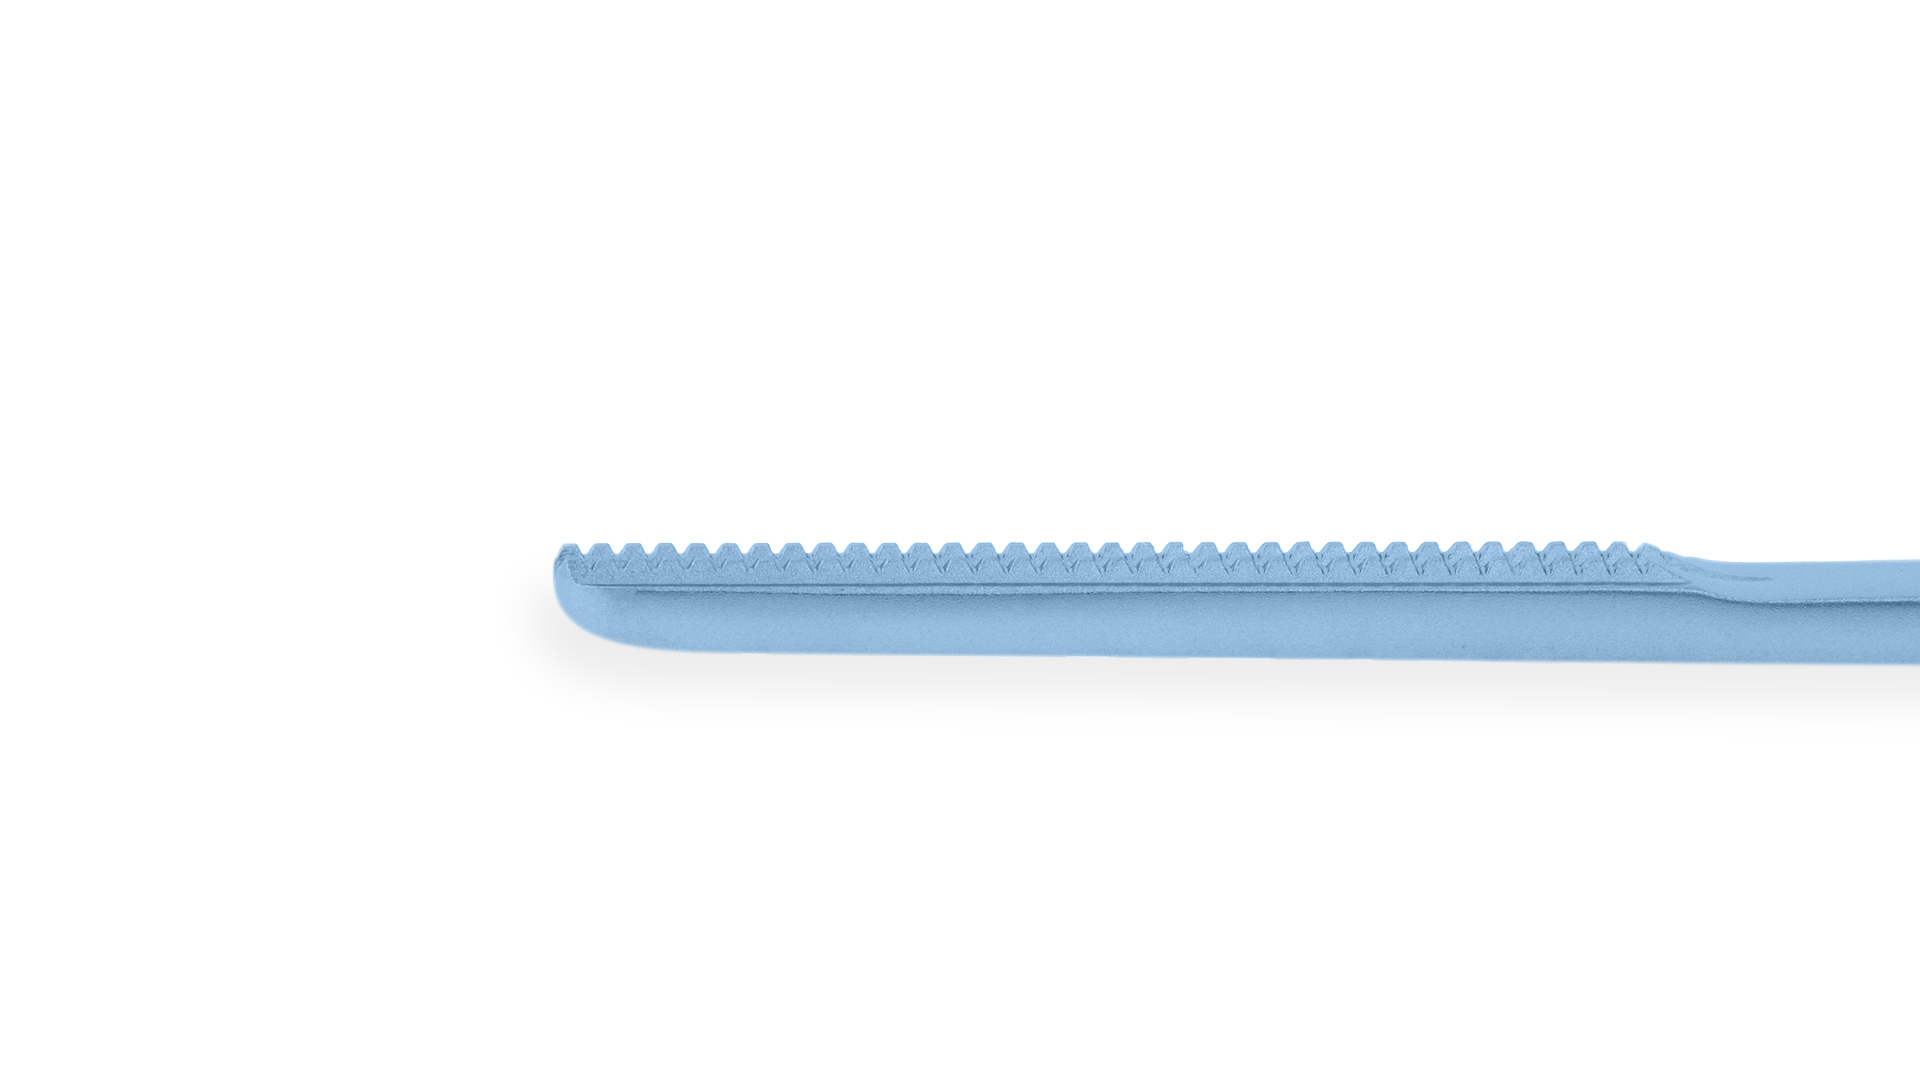 DeBakey Tissue Forceps - Straight 2.5mm tips